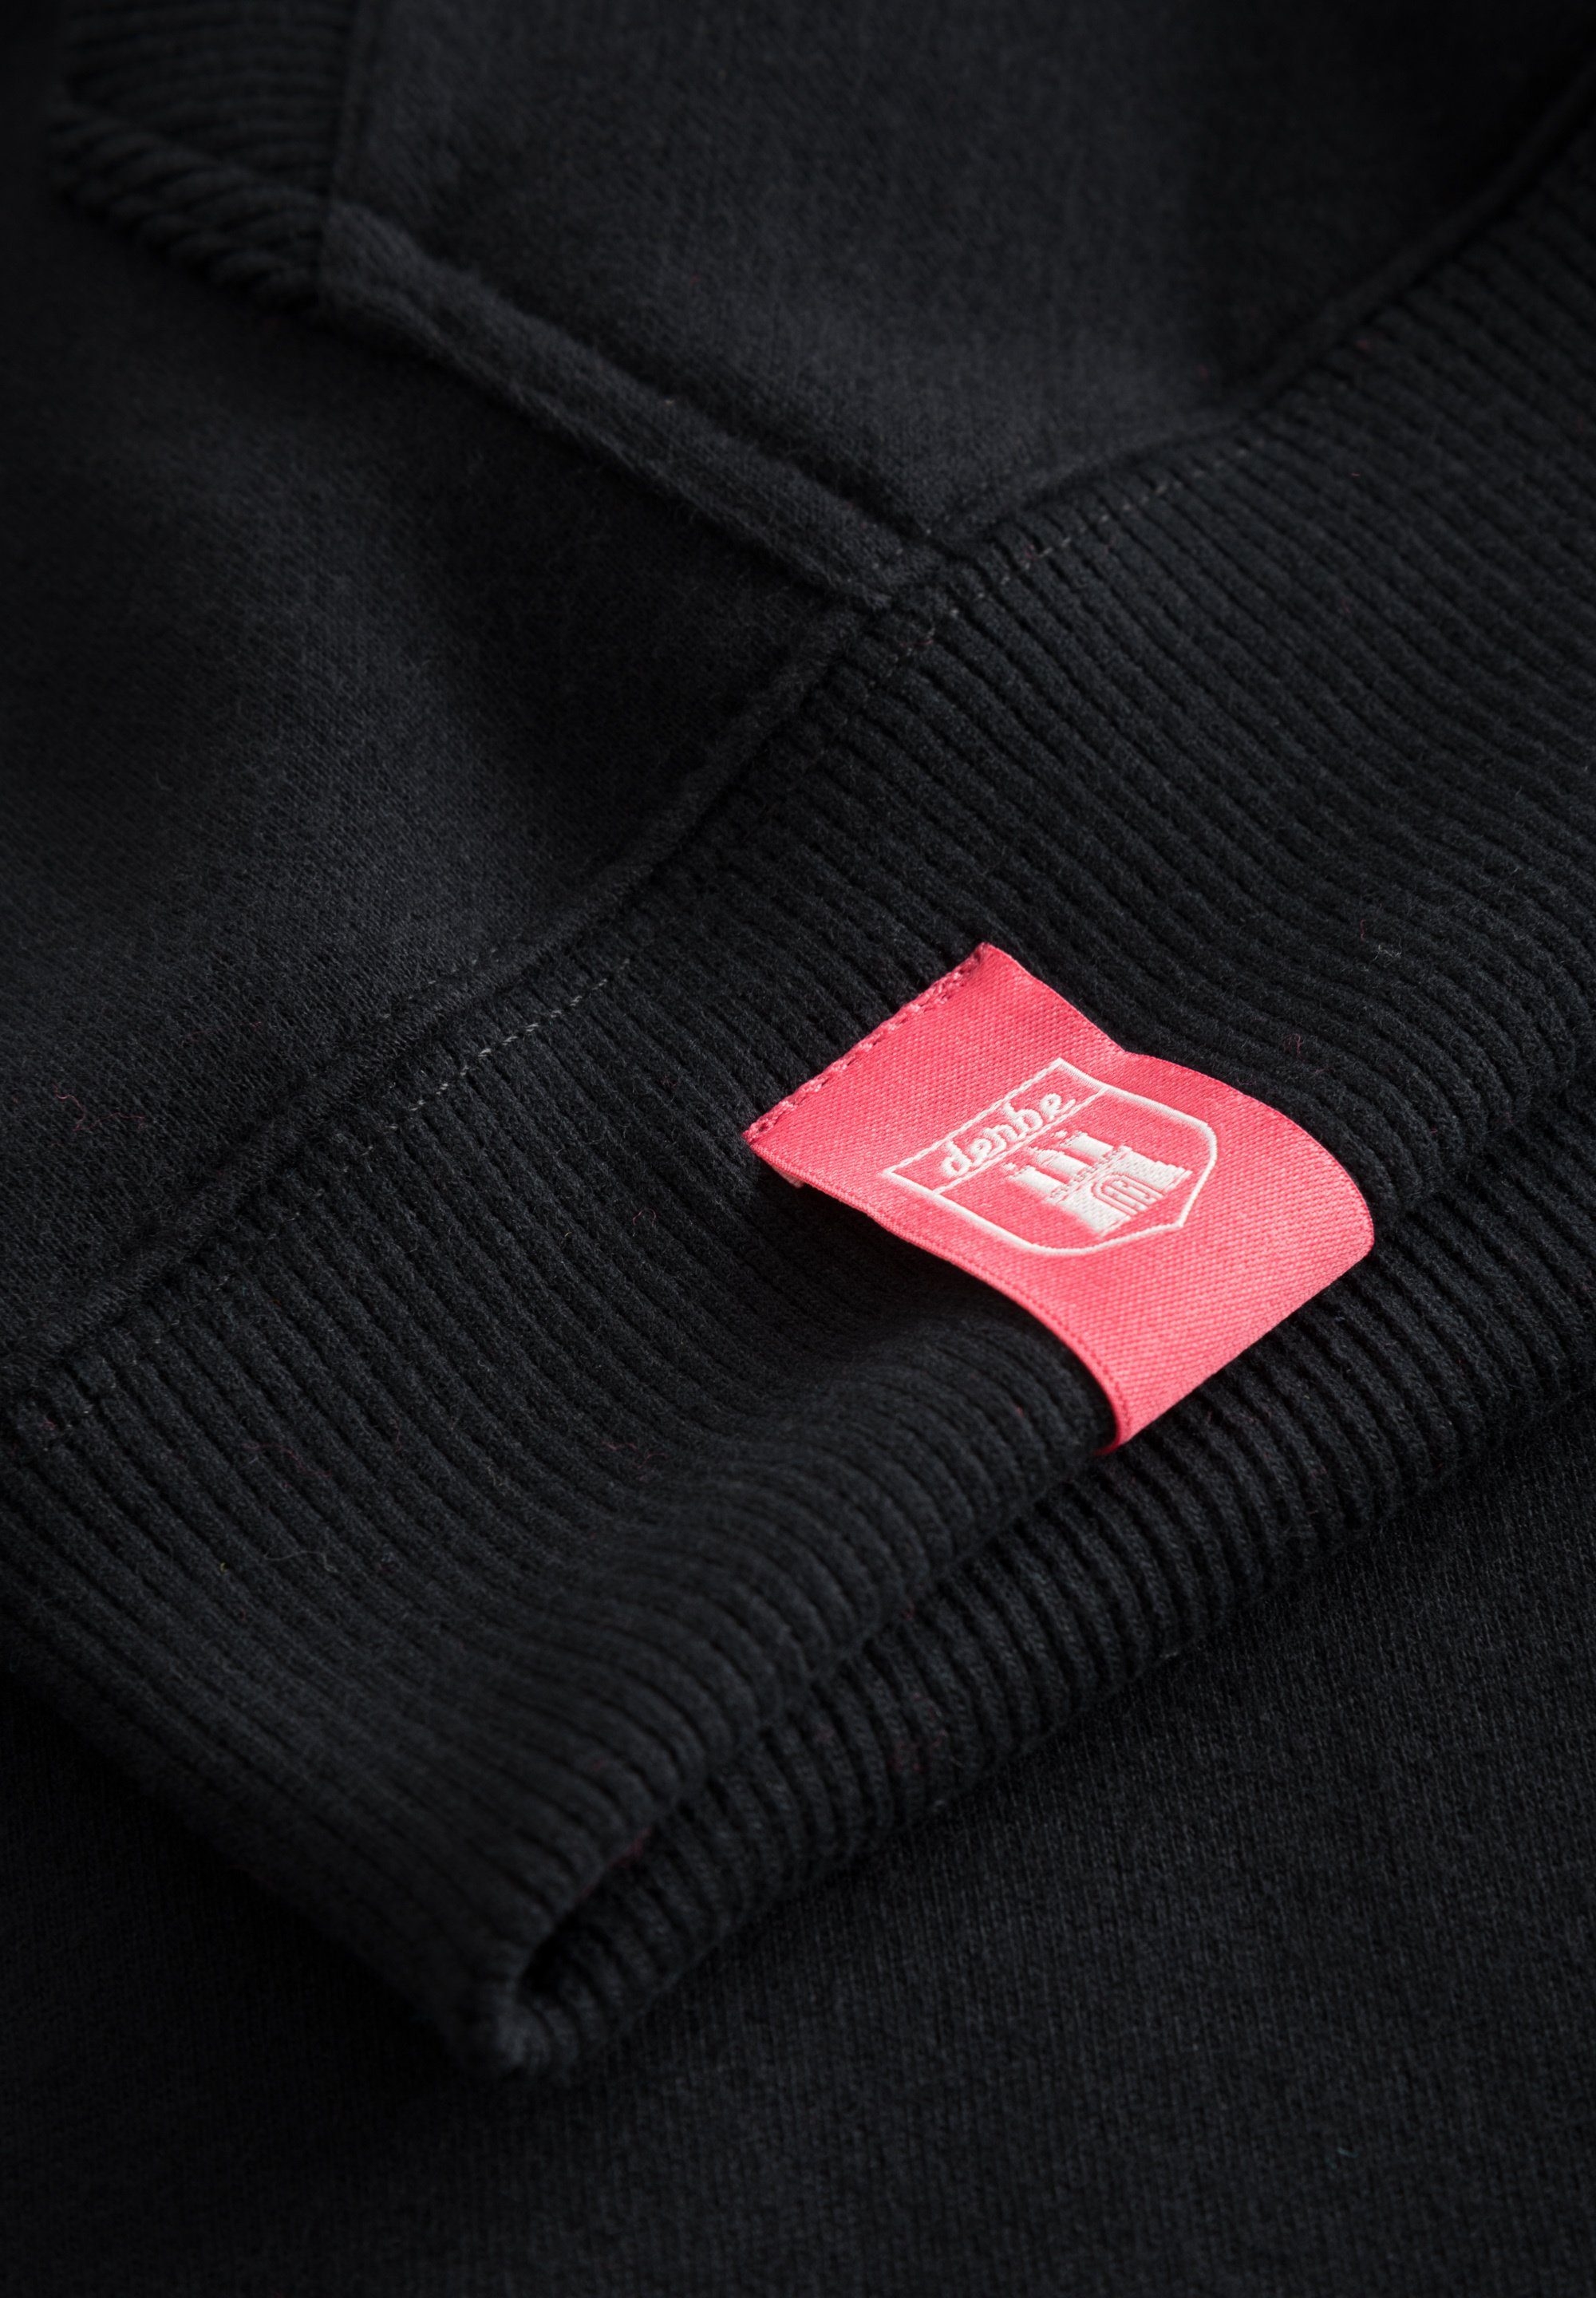 Super Portugal MOIN Made schwarz Sweatshirt weich, Derbe in